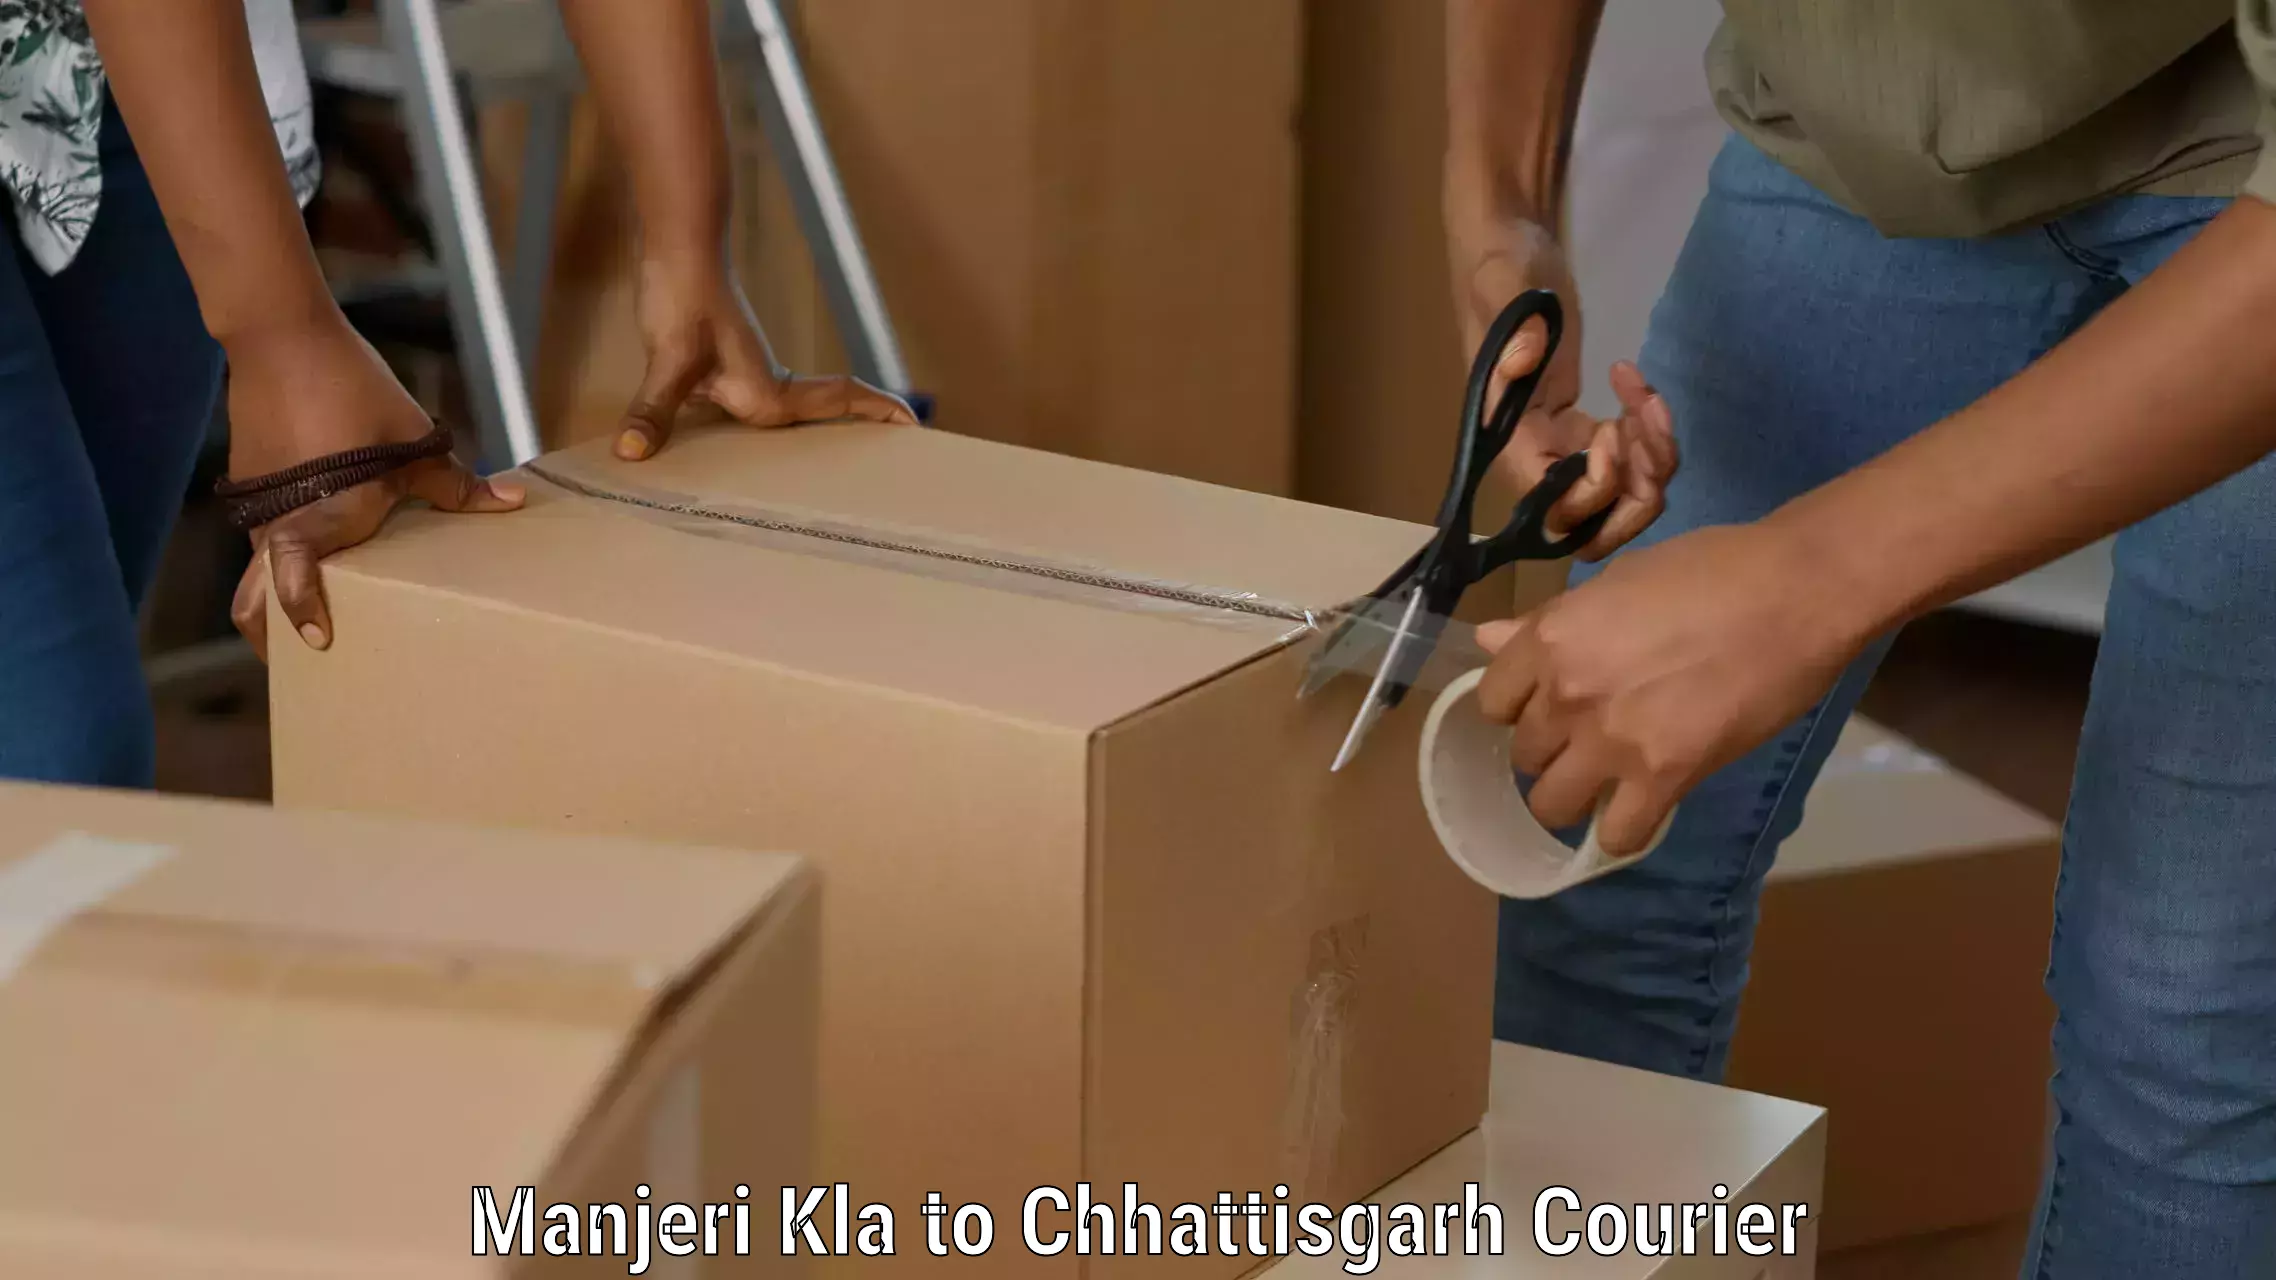 Multi-service courier options Manjeri Kla to Chhattisgarh